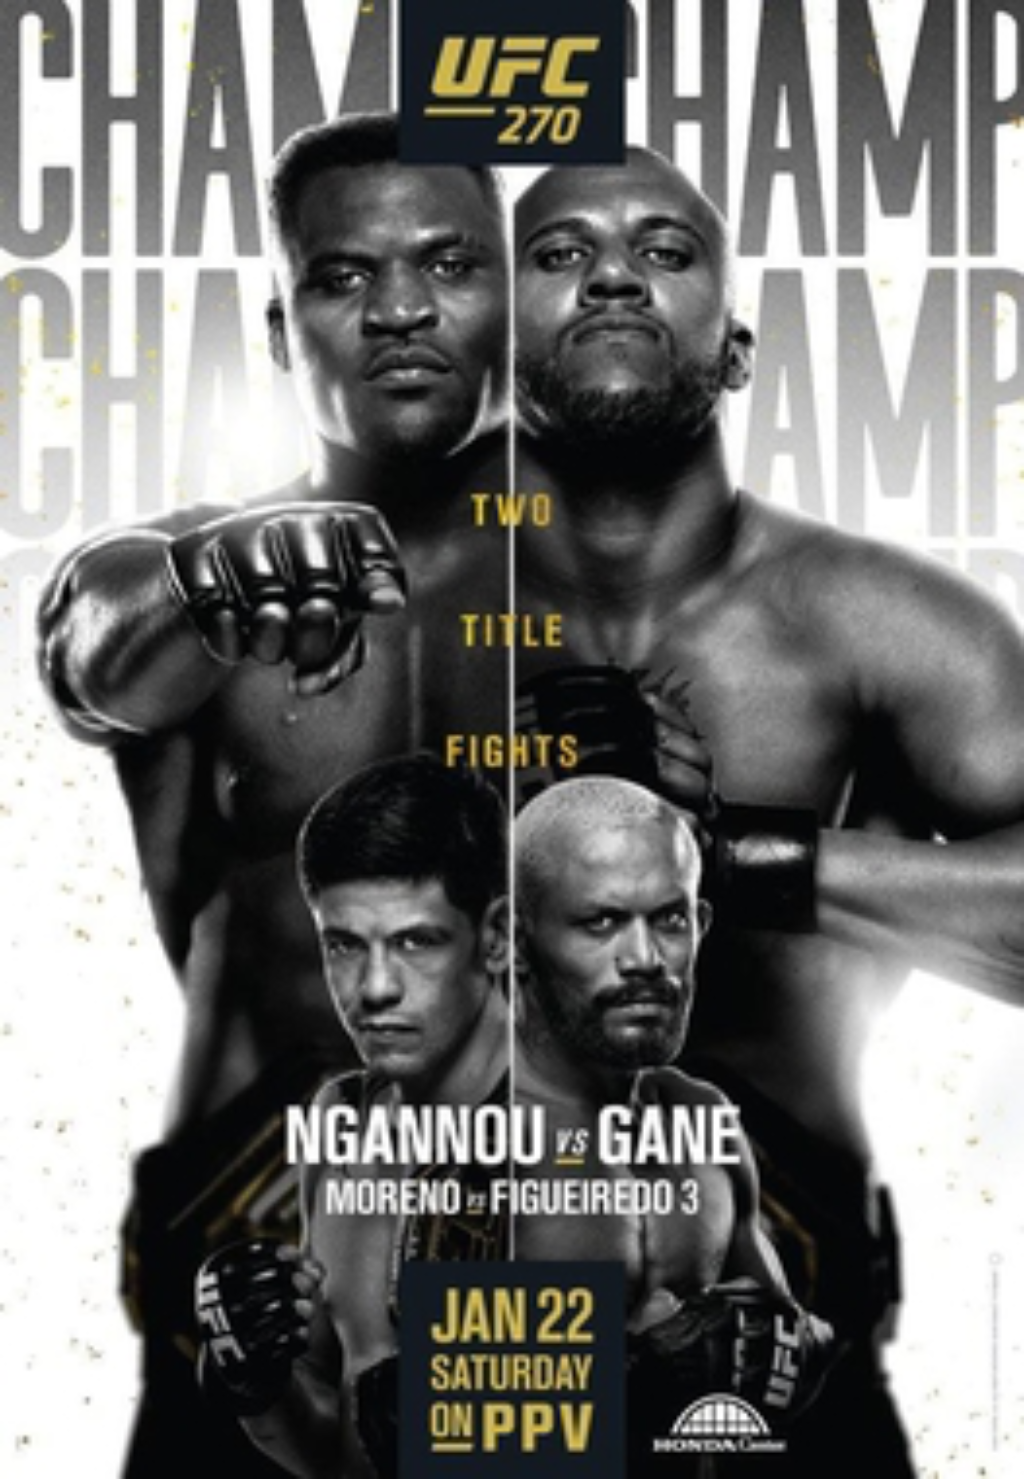 UFC 270 NGANNOU VS GANE